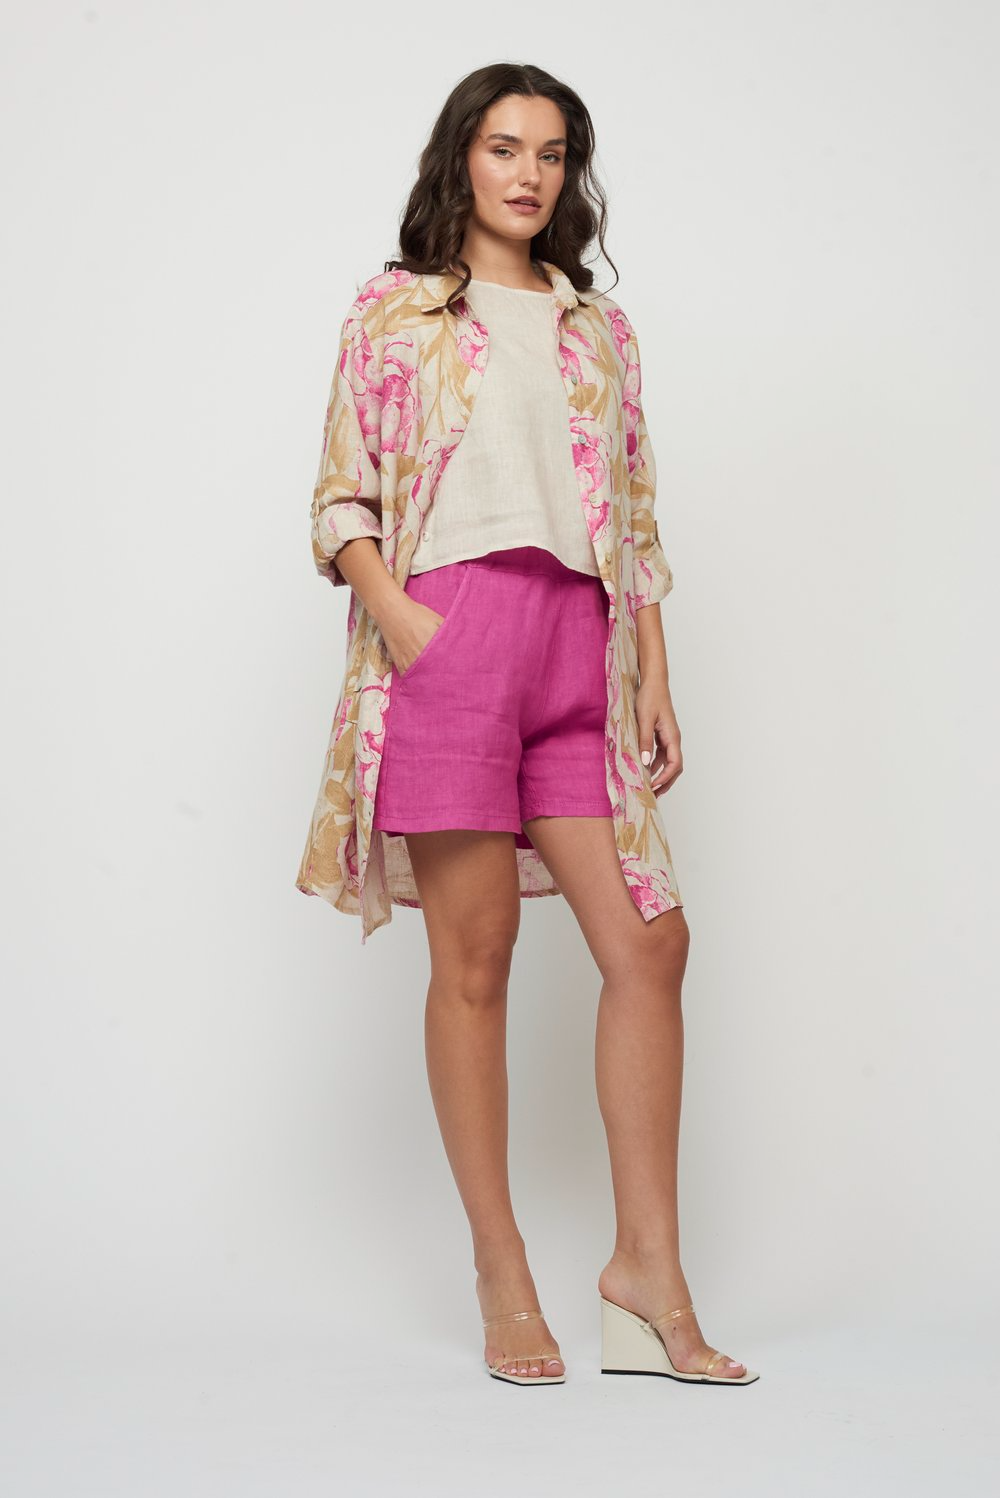 Pistache Linen Blouse Dress - Camel/Fuchsia Clothing - Tops - Tunics by Pistache | Grace the Boutique